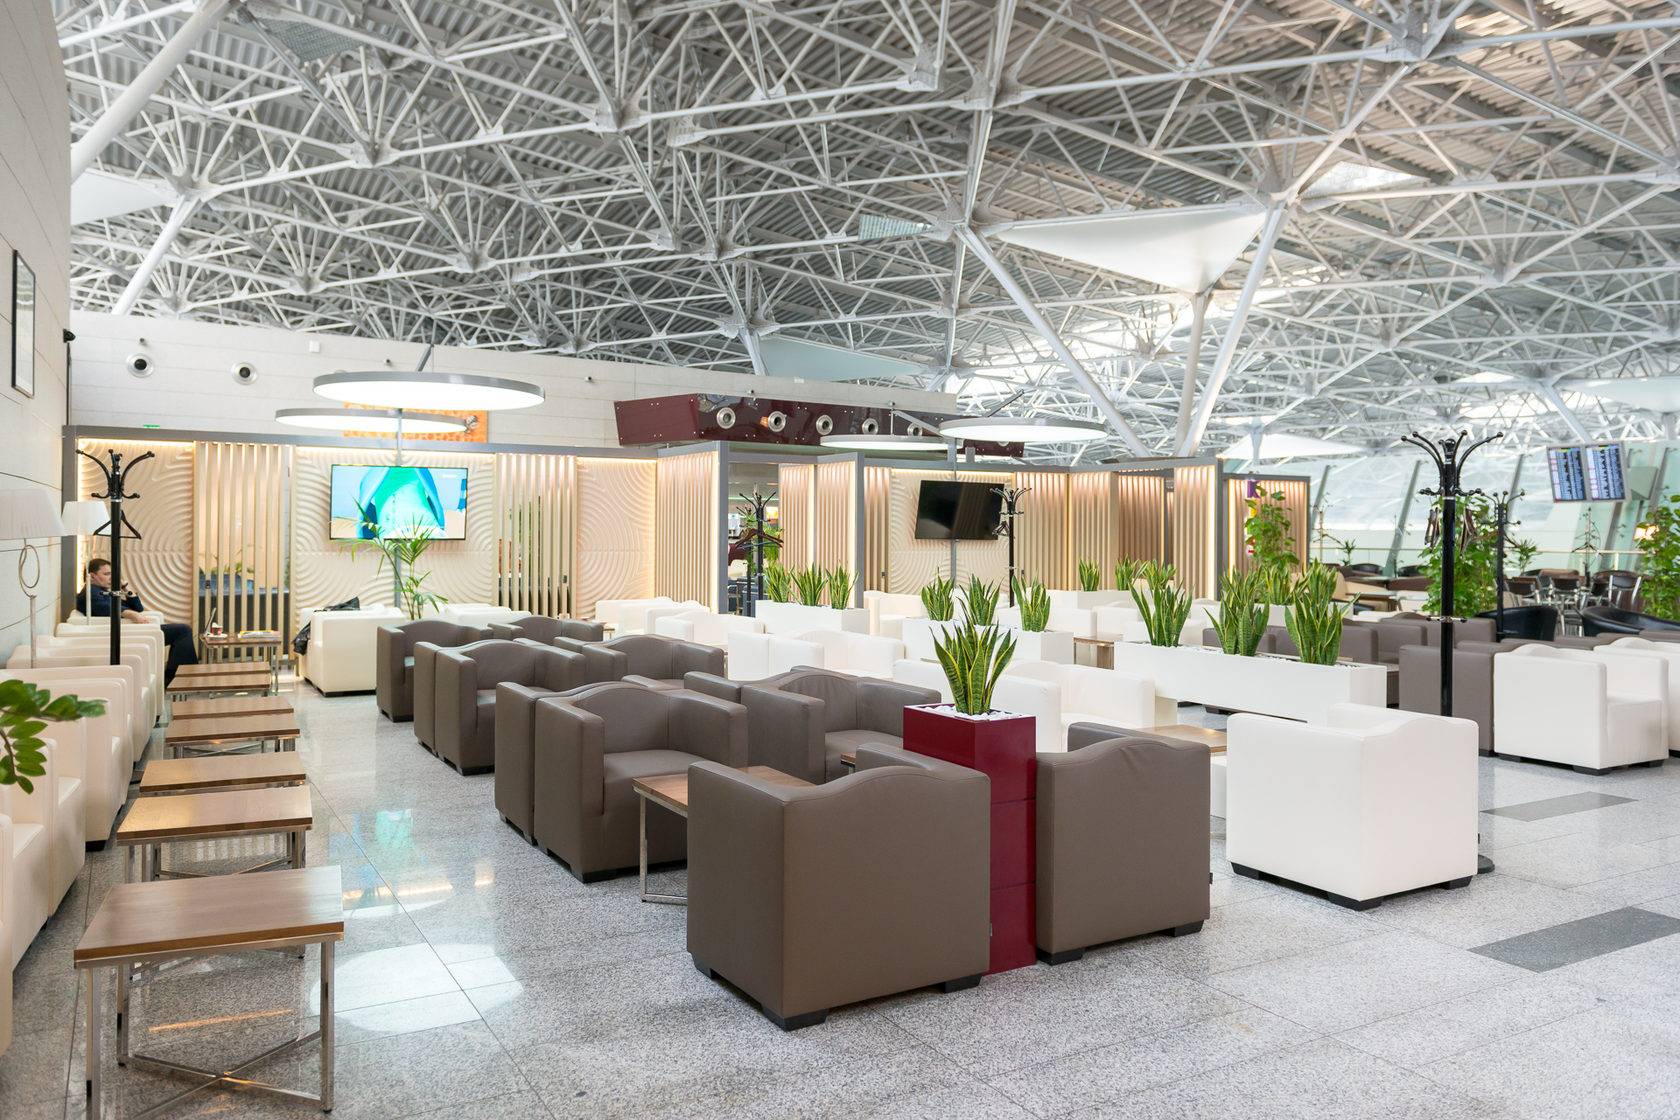 Чем хороши бизнес-залы в аэропортах и как проходить туда бесплатно (или почти бесплатно)